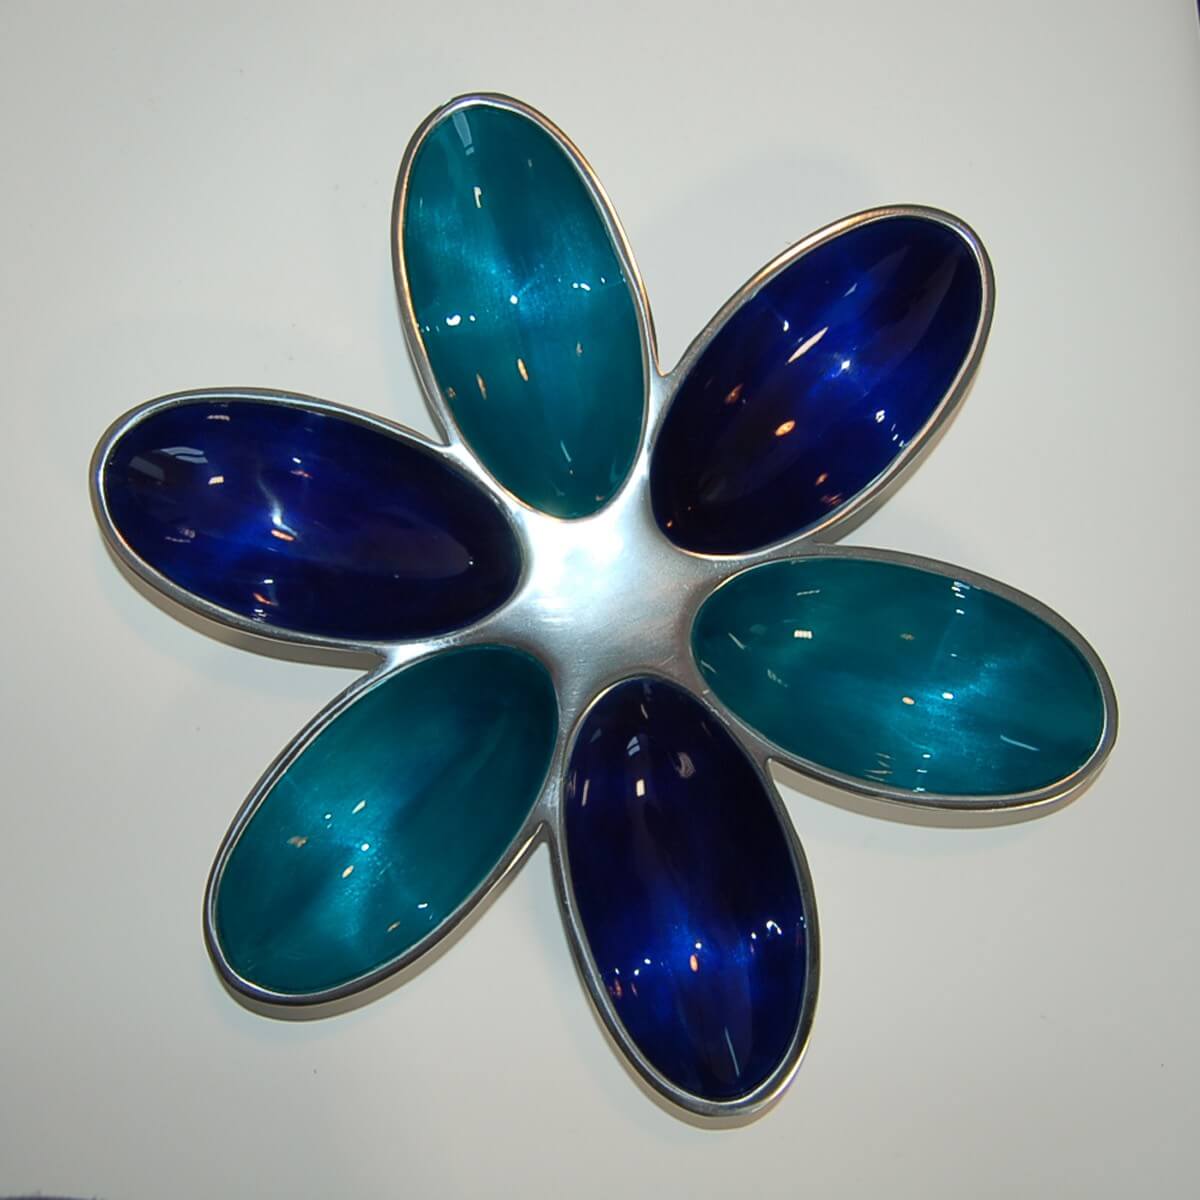 Deko Schale mit Blütenform in Aluminium Blau Türkis